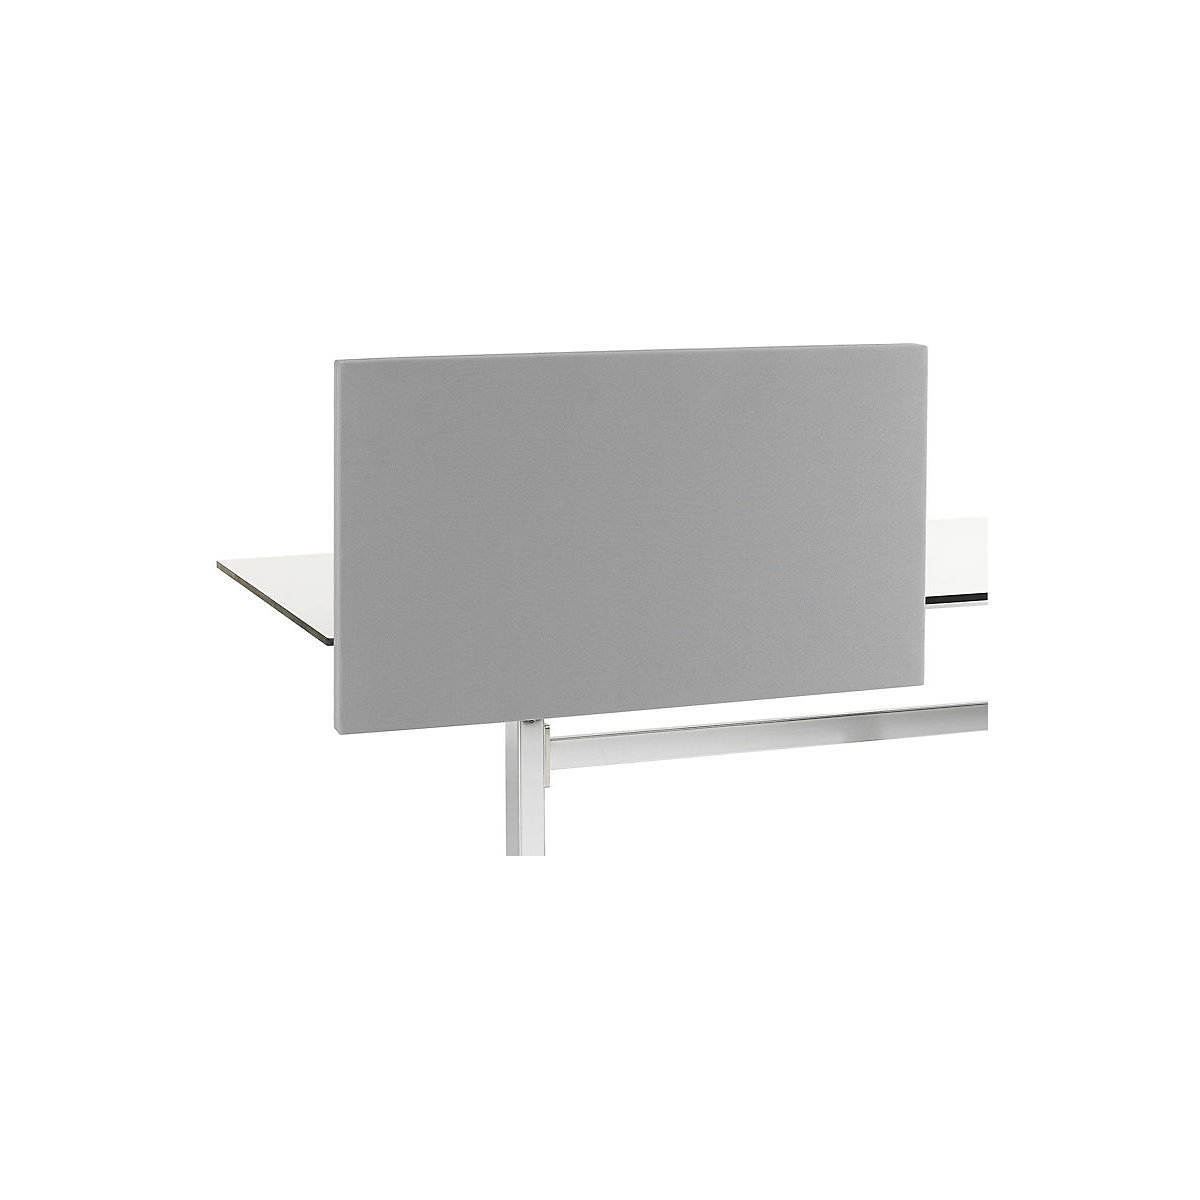 Akoestische tafelscheidingswand Standard met rechte hoeken